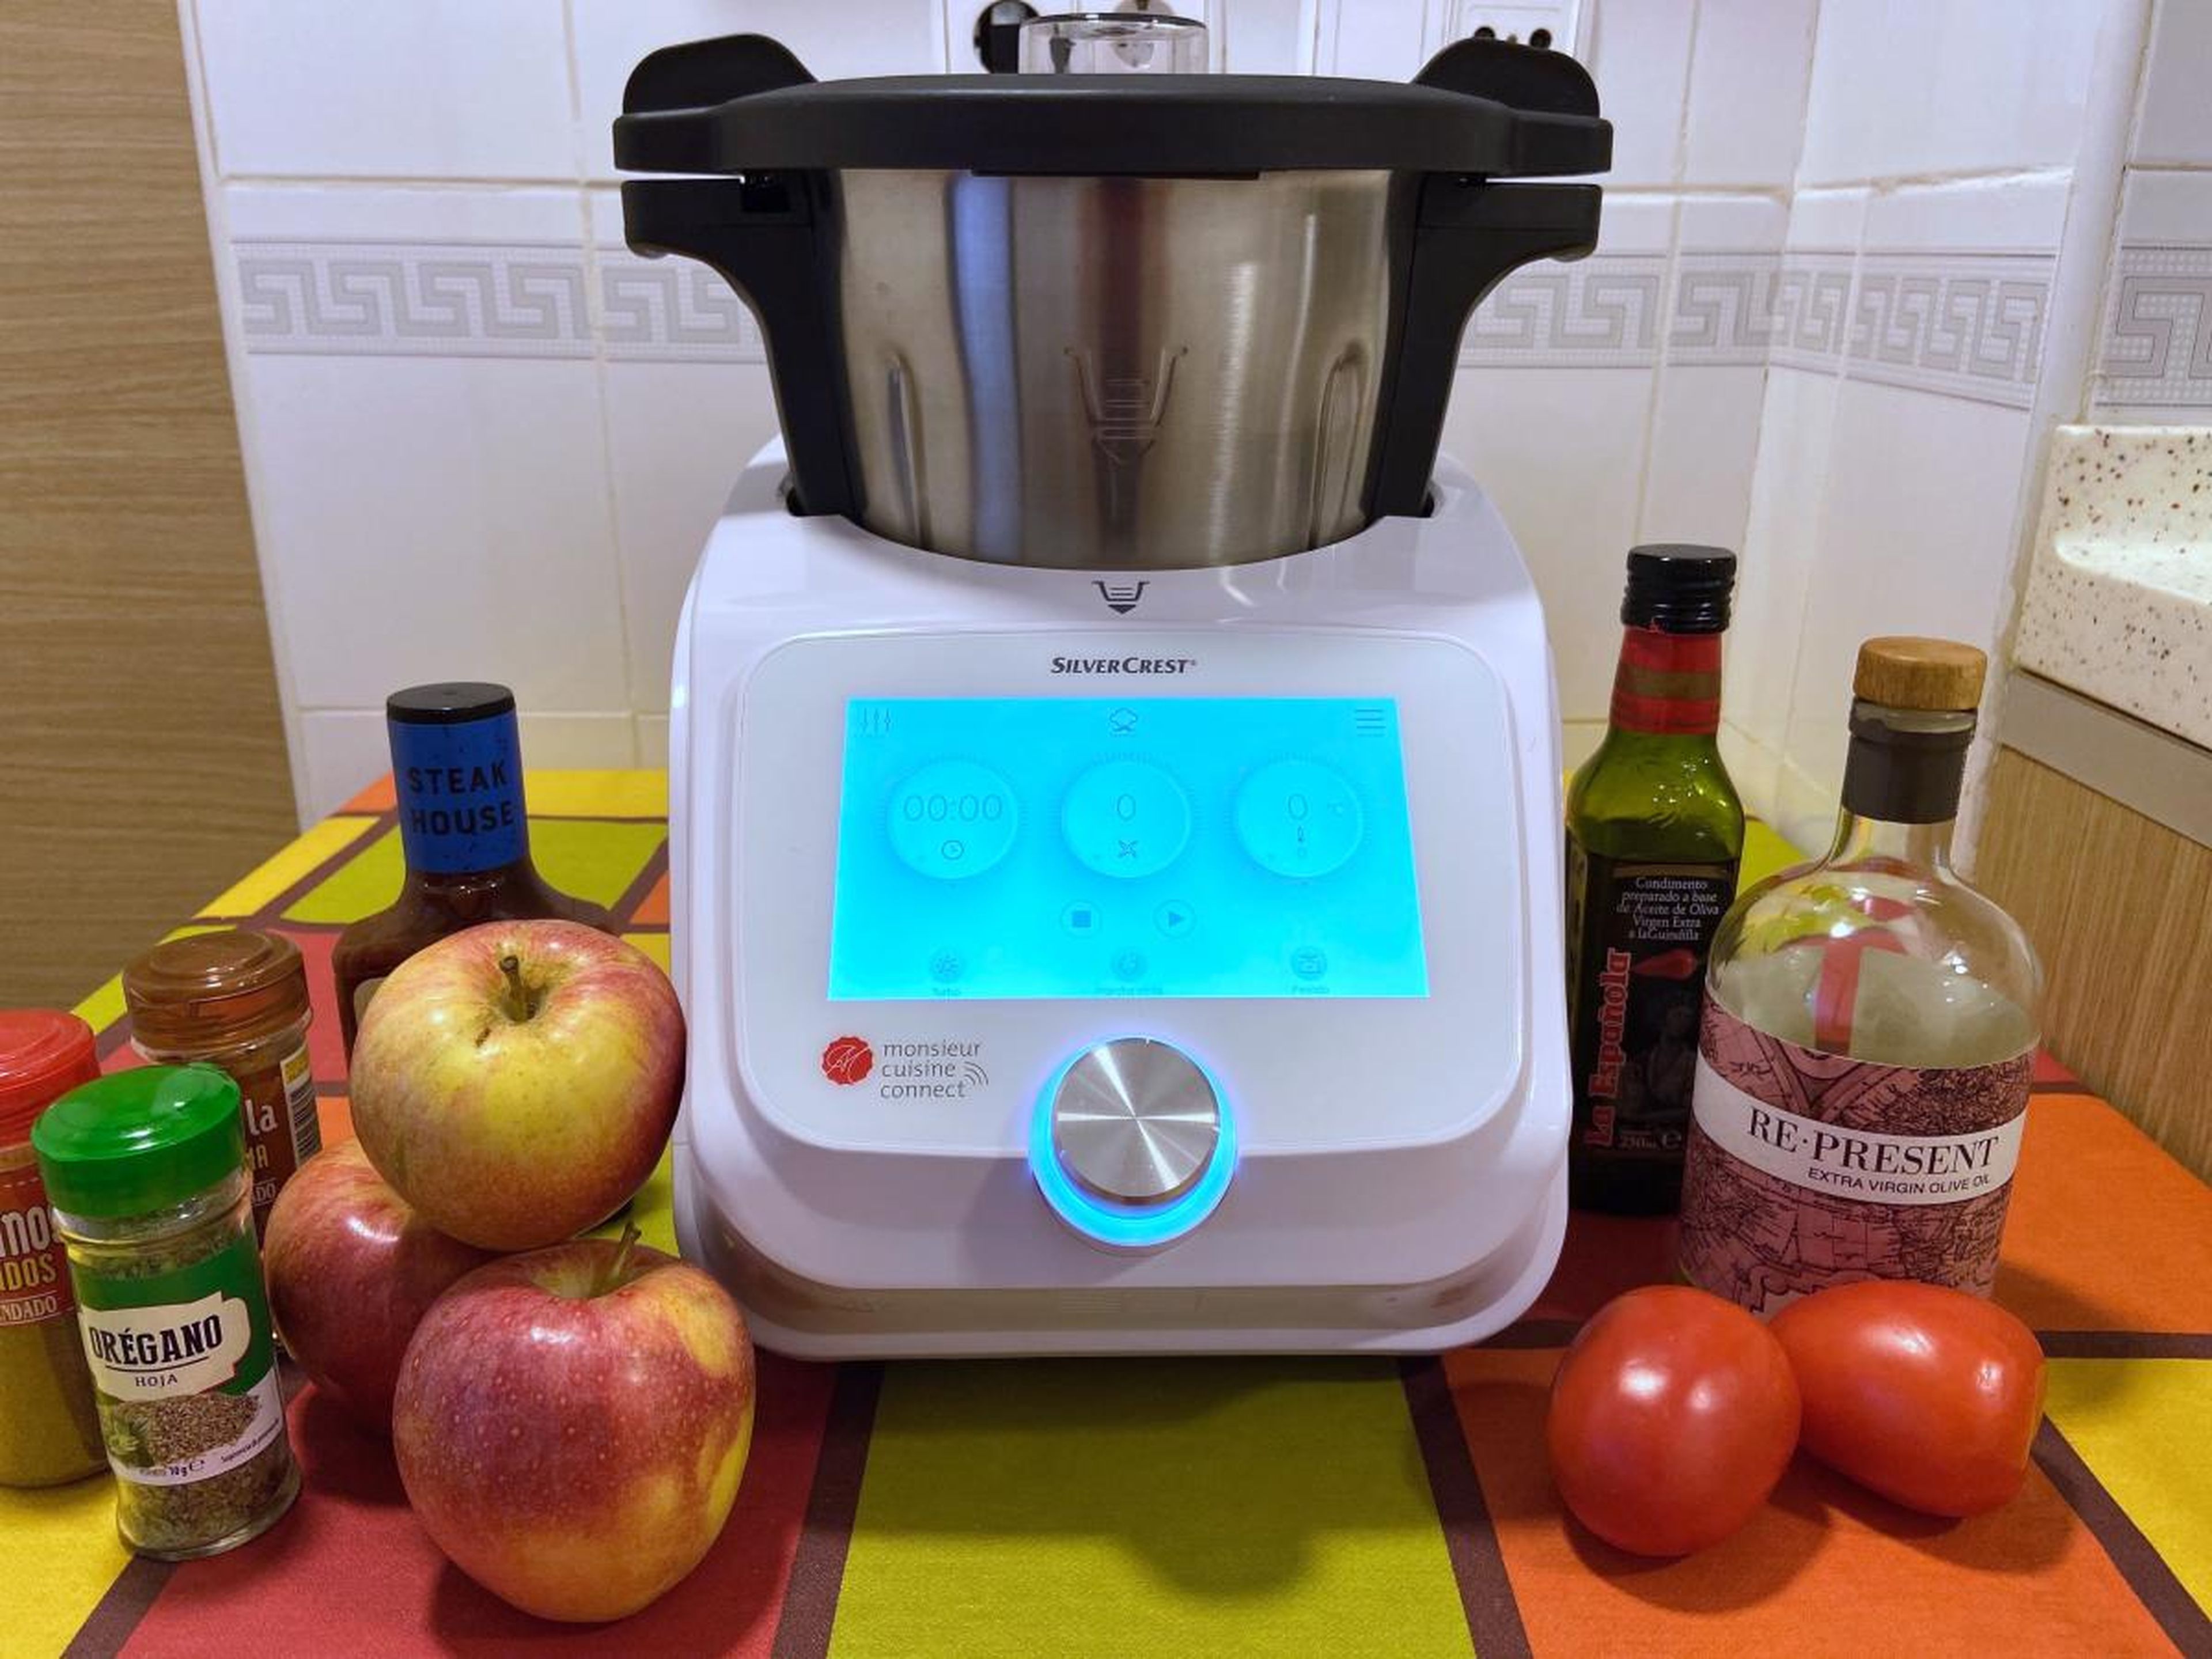 ¿No encuentras el robot de cocina de Lidl? Así puedes comprarlo desde Alemania